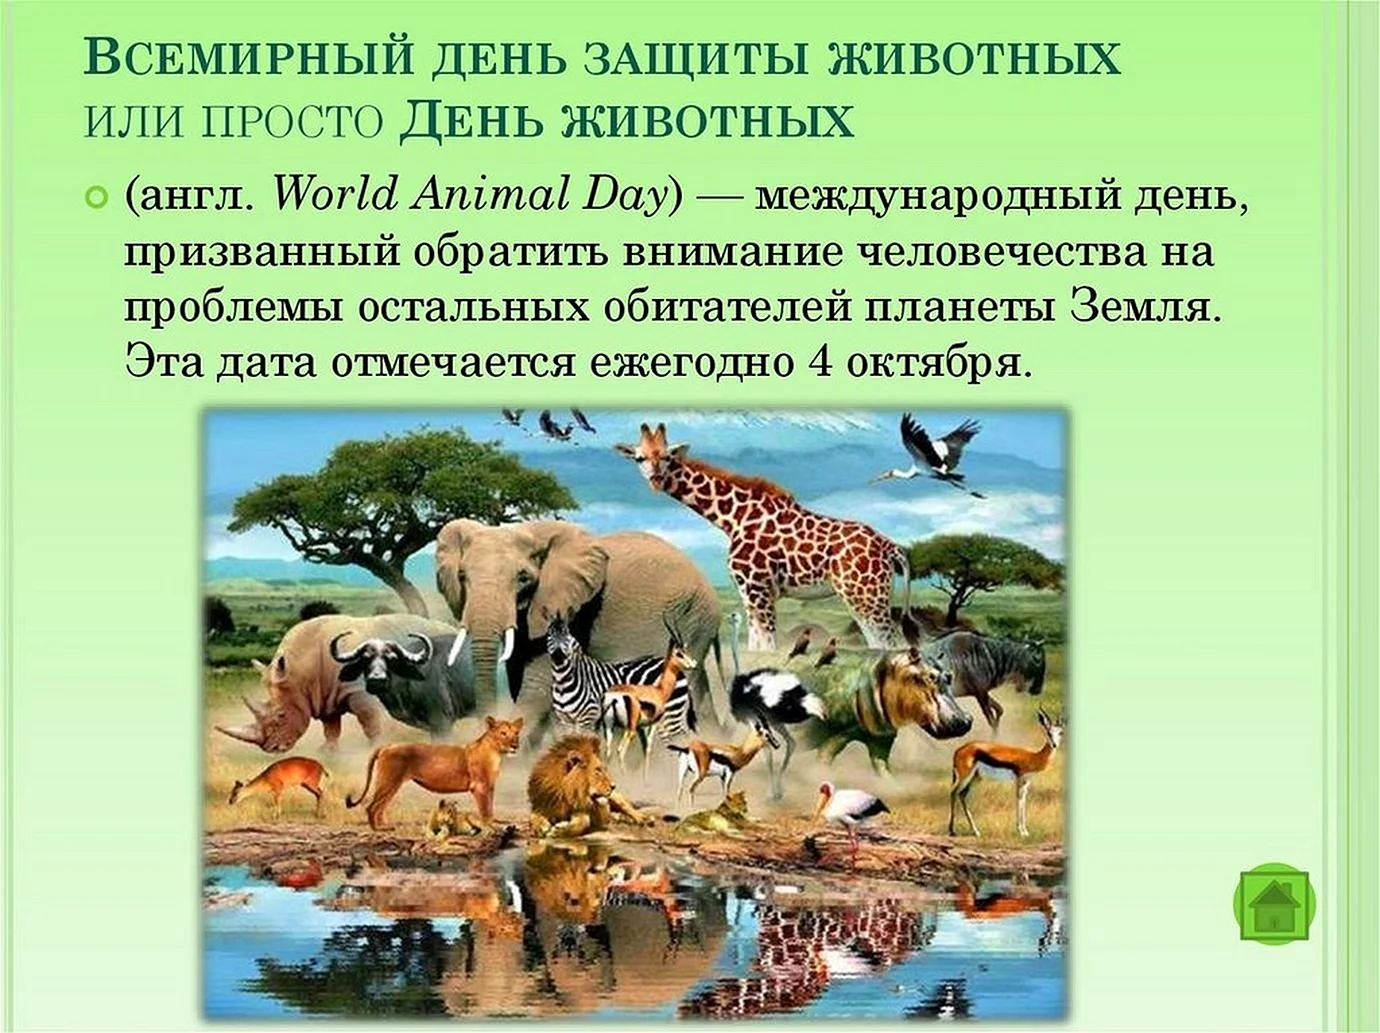 Международный день защиты животных